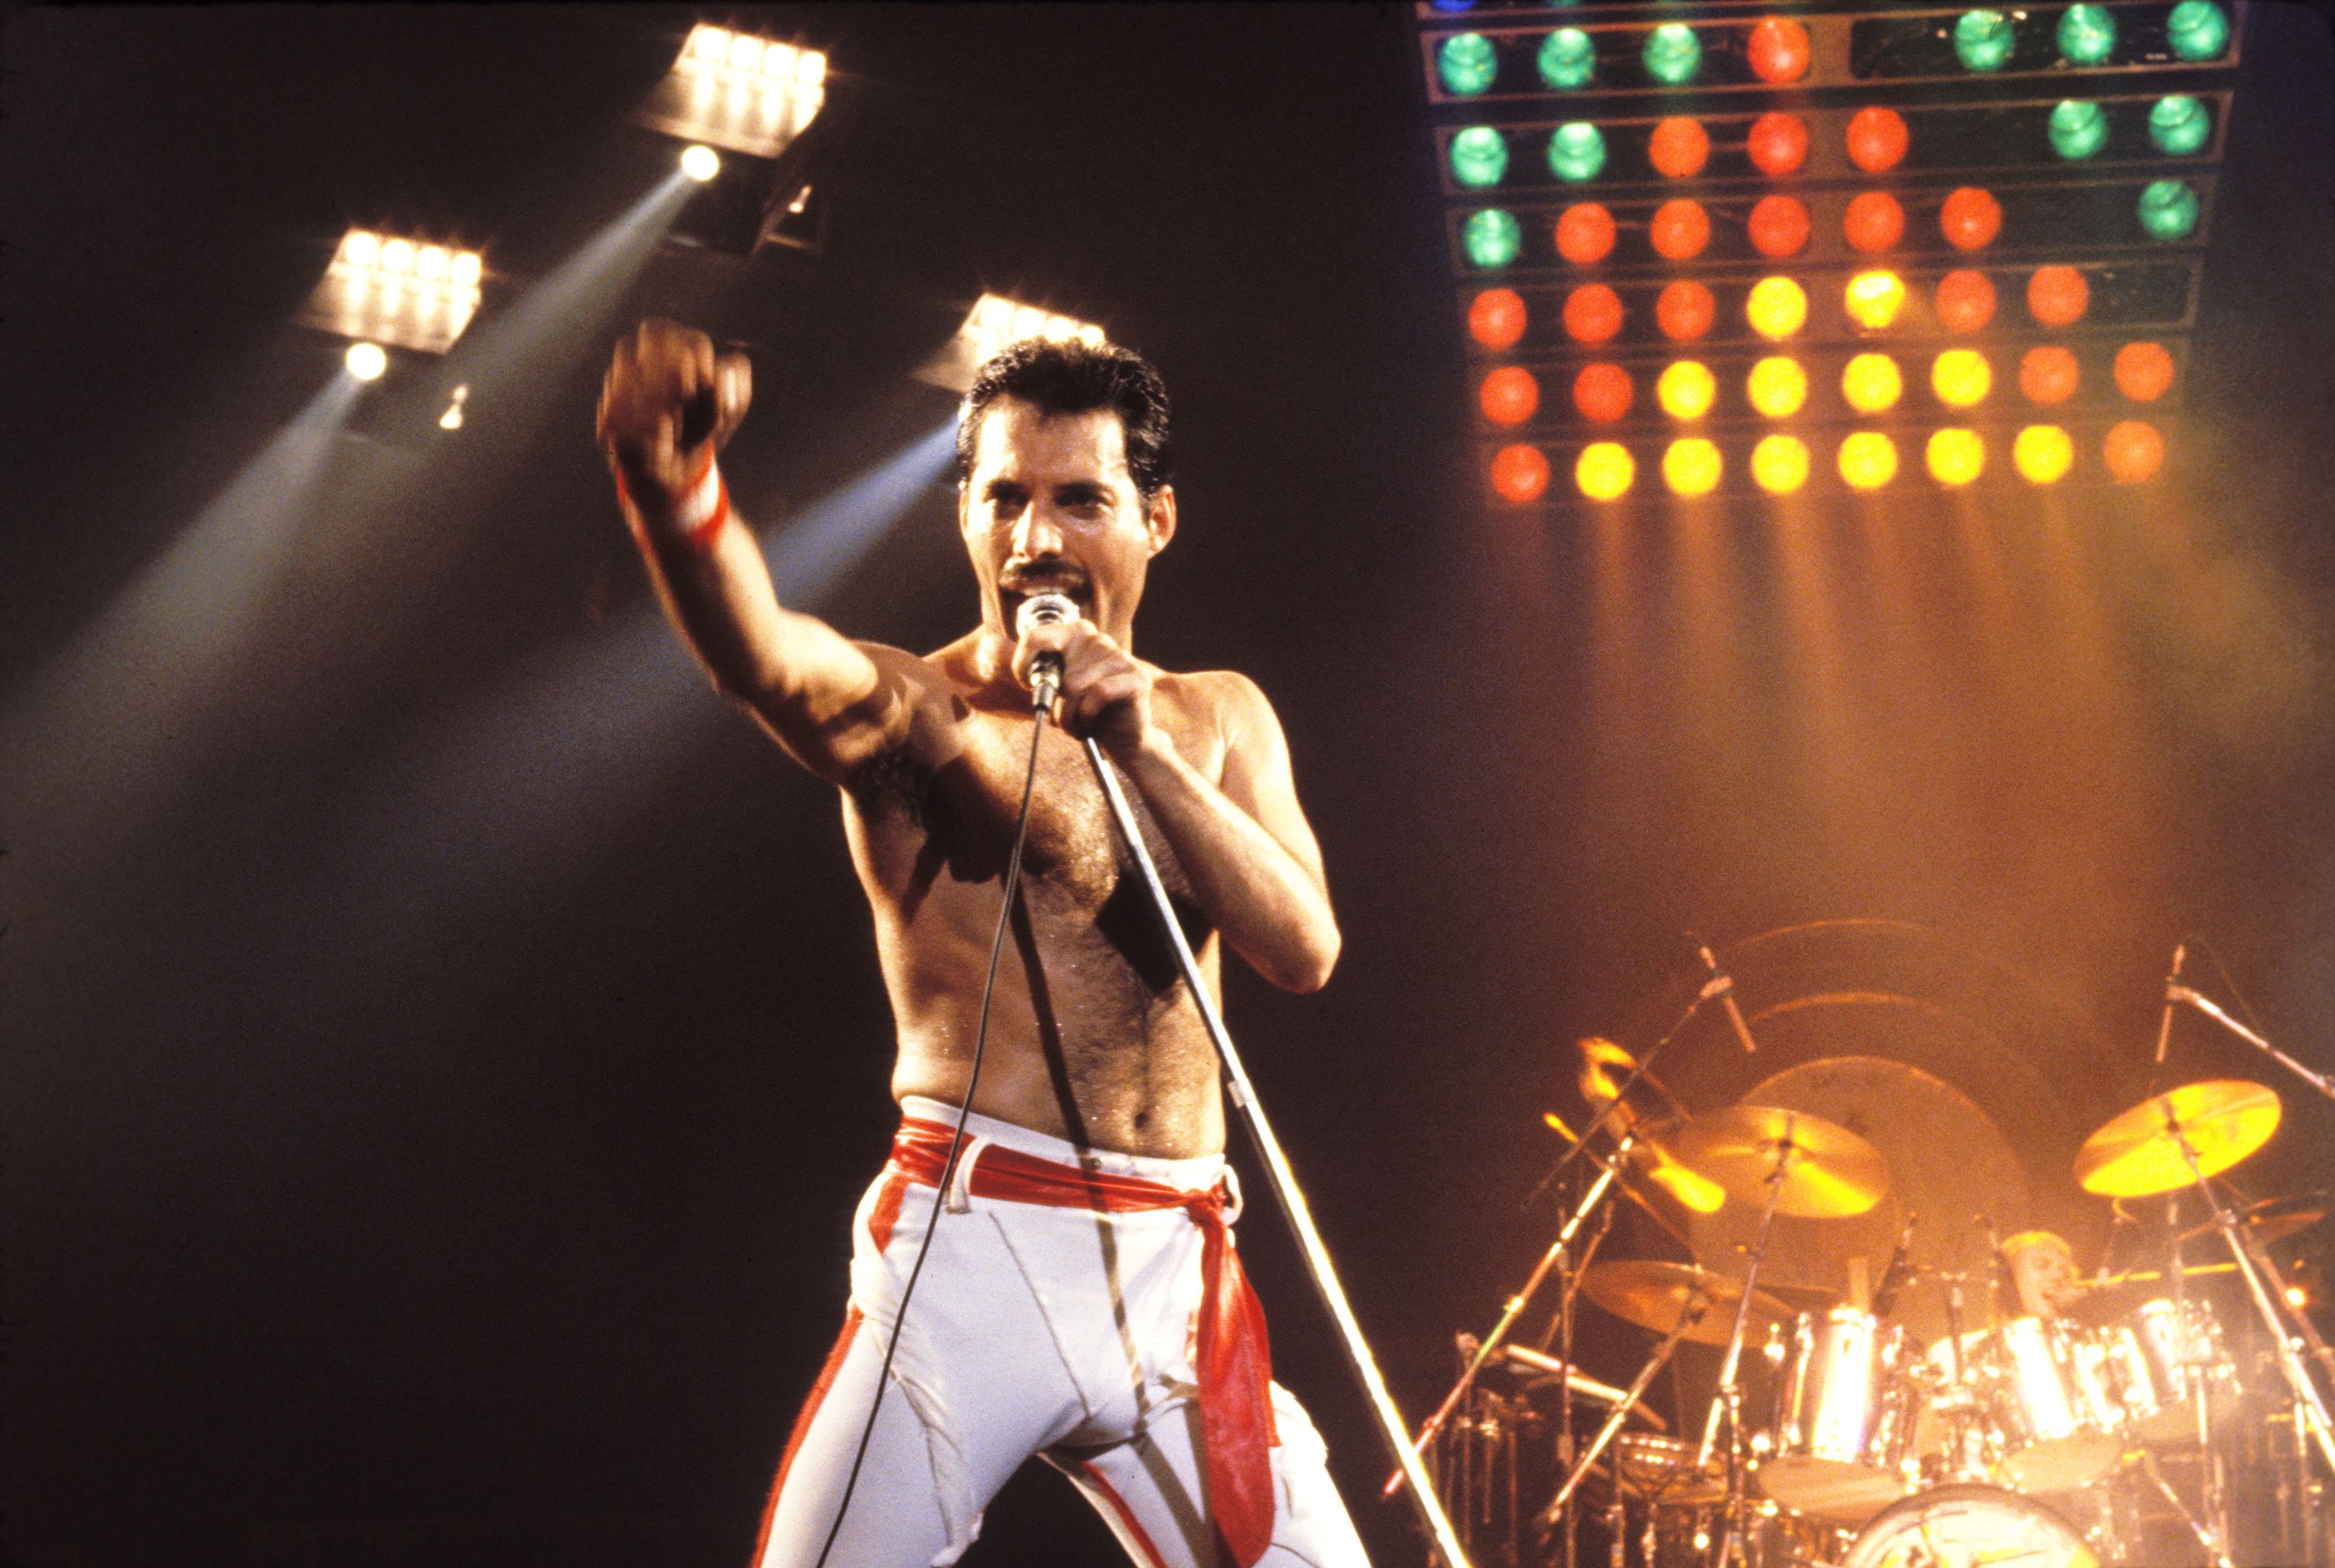 Death of Freddie Mercury - Wikipedia